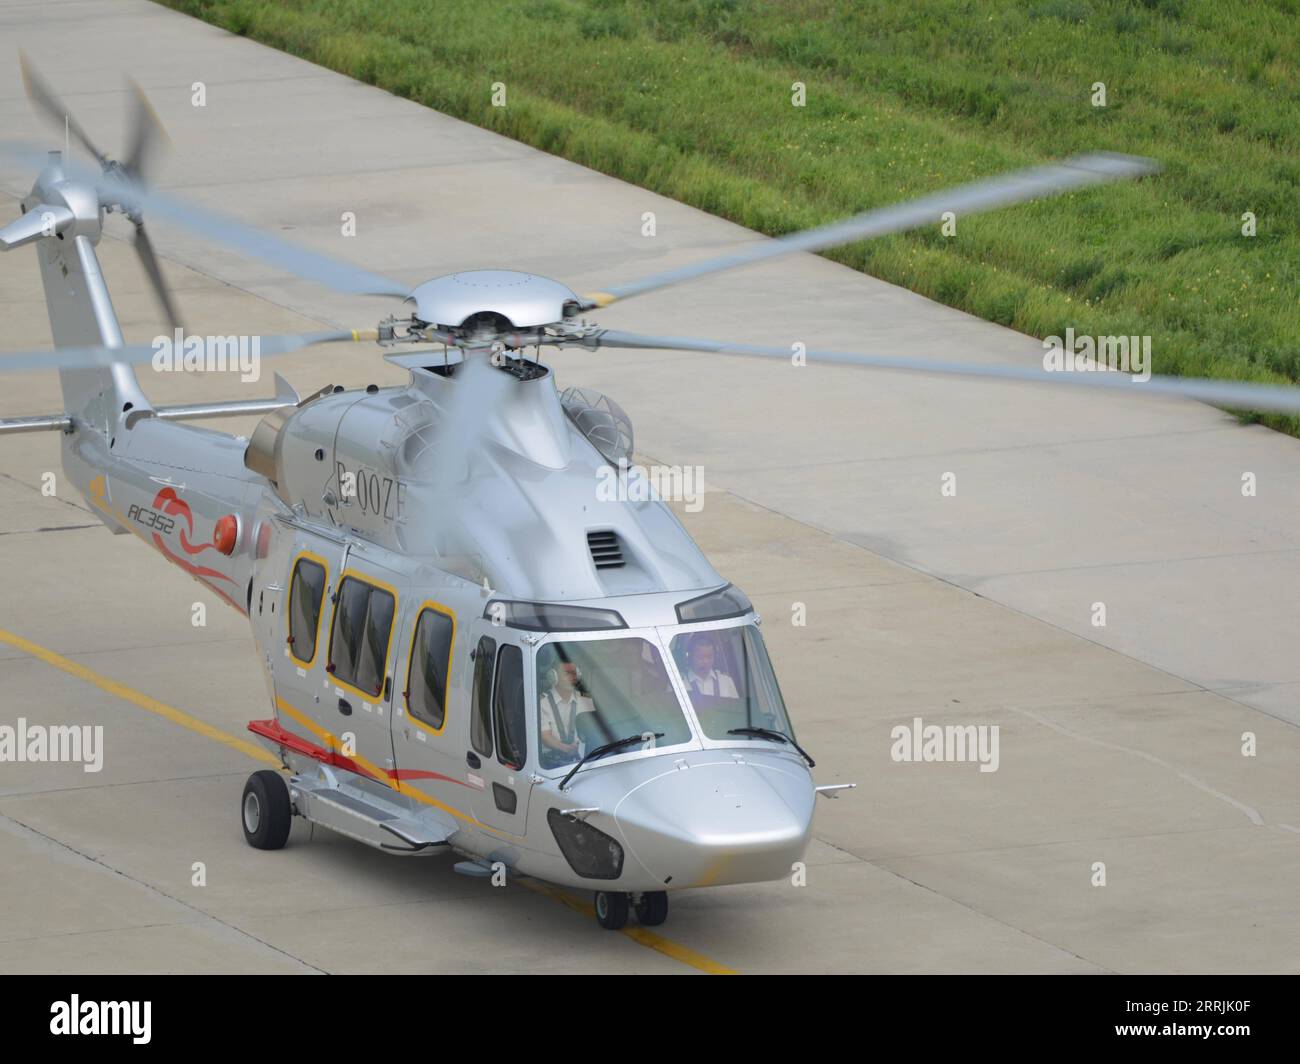 220727 -- HARBIN, 27. Juli 2022 -- Foto aufgenommen am 26. Juli 2022 zeigt einen Z15 AC352 Hubschrauber in Harbin, nordöstliche chinesische Provinz Heilongjiang. Die Zivilluftfahrtbehörde von China CAAC hat am Dienstag die Zertifizierung für den Z15-Hubschrauber erteilt, das erste selbstentwickelte, mittelgroße Hubschraubermodell des Landes für den zivilen Einsatz. Z15, auch bekannt als AC352, wurde von AVIC Harbin Aircraft Industry Group Co., Ltd. Im Rahmen eines Kooperationsprogramms zwischen AVIC und Airbus Helicopters entwickelt. Er kann bis zu 16 Passagiere mit einem maximalen Startgewicht von 7,5 Tonnen und einer maximalen Reichweite von 850 km befördern CHINA-HEILONG Stockfoto